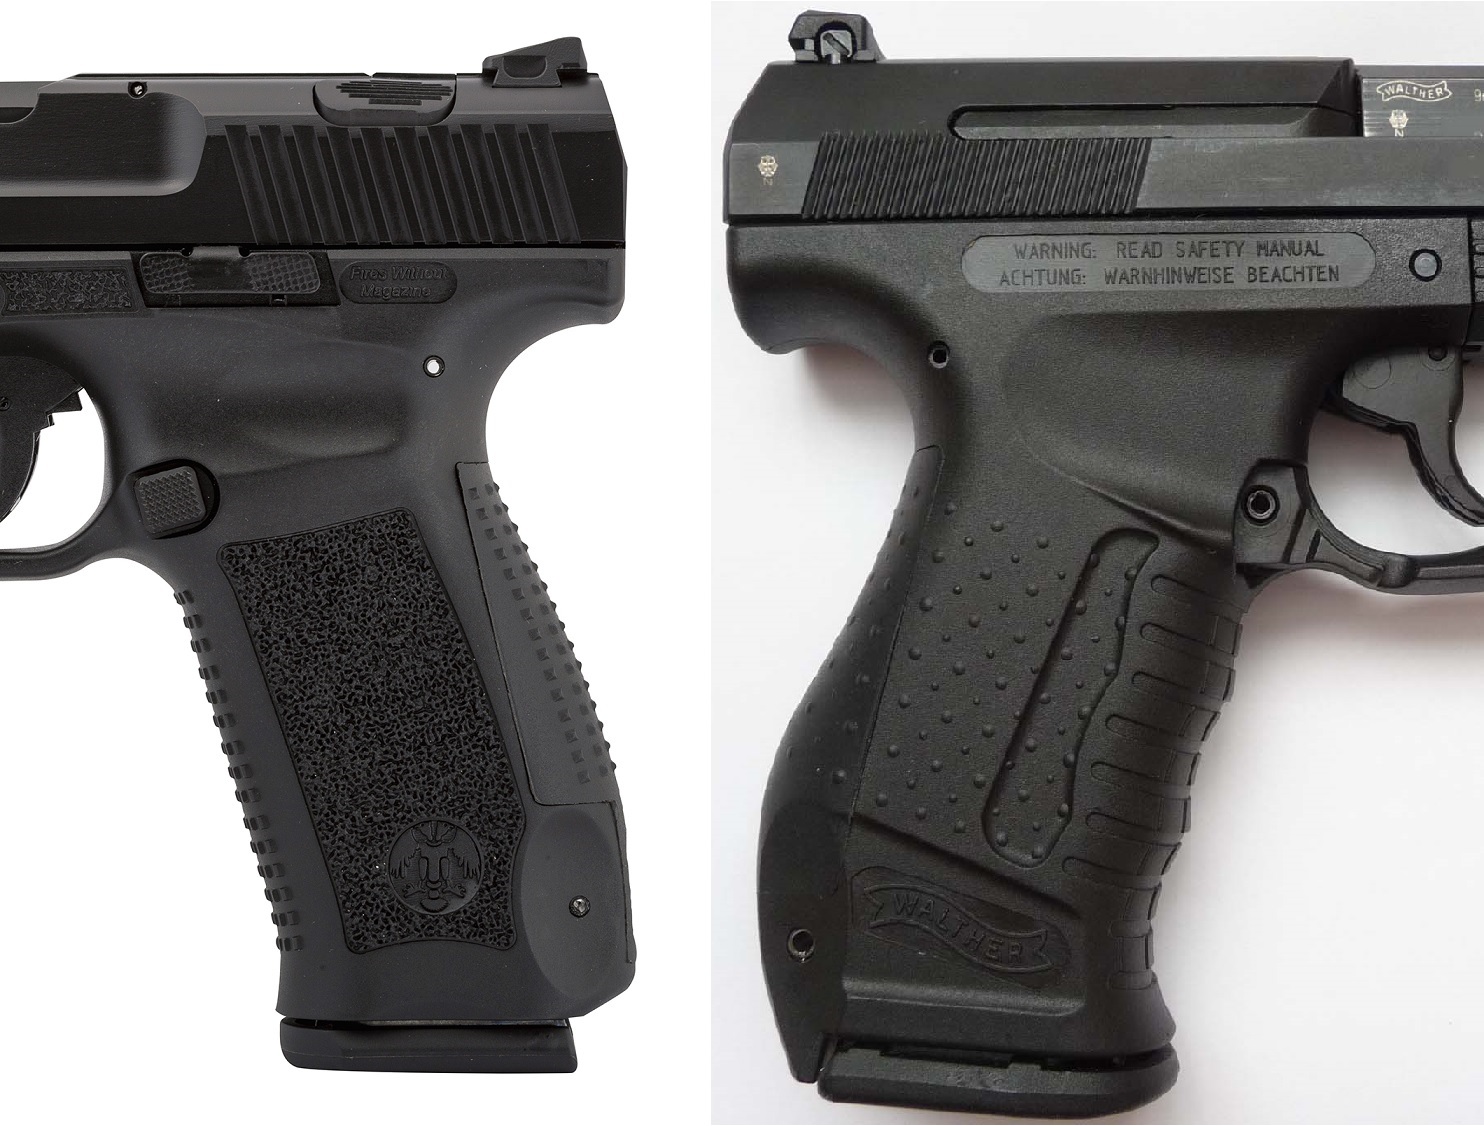 Canik TP9SA VS Walther P99